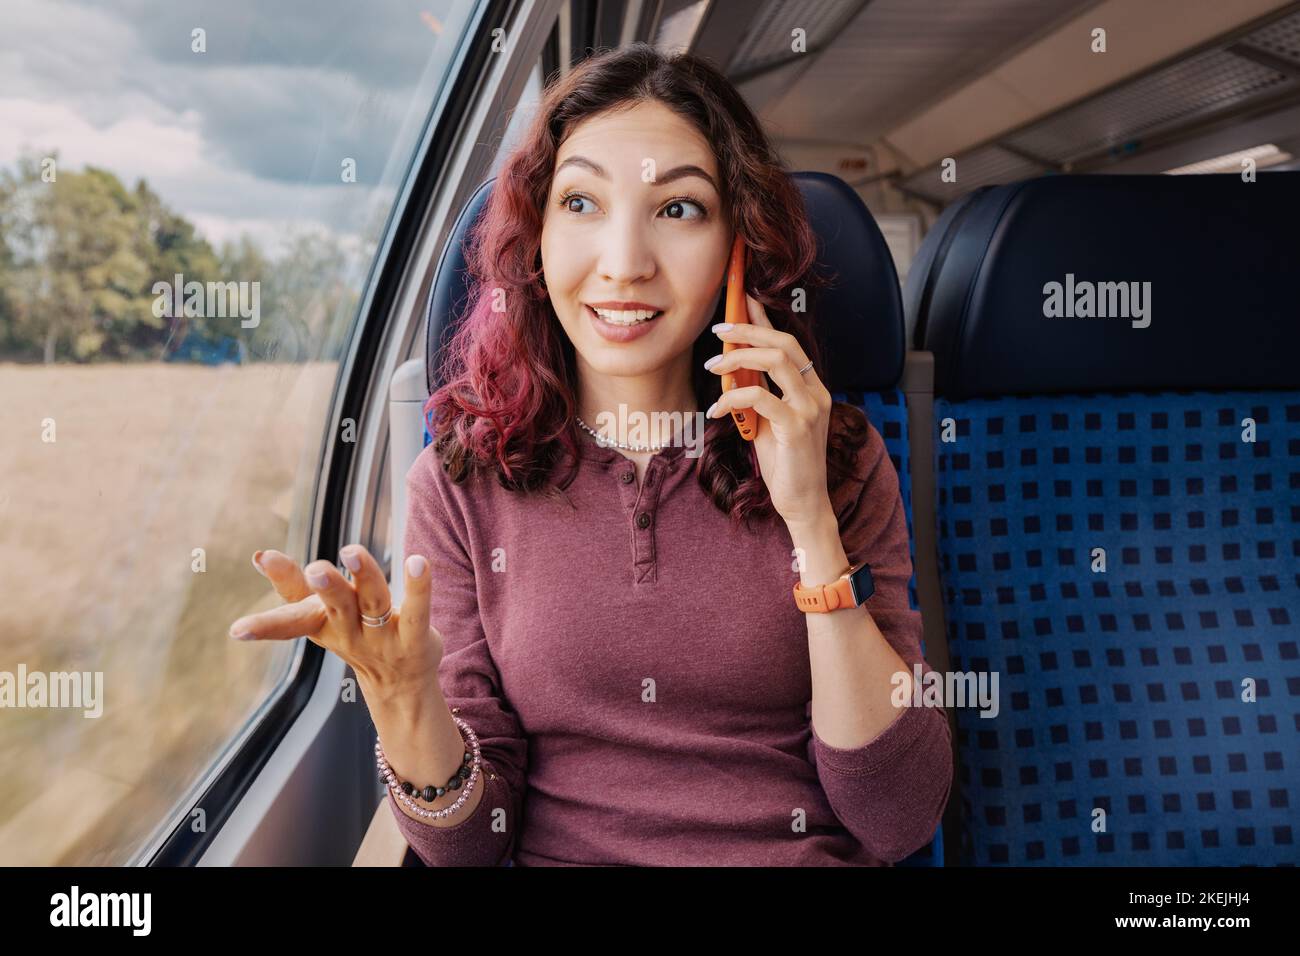 Une fille asiatique parle amblement avec un client ou un ami au téléphone lors d'un voyage dans un pays à bord d'un train à grande vitesse moderne Banque D'Images